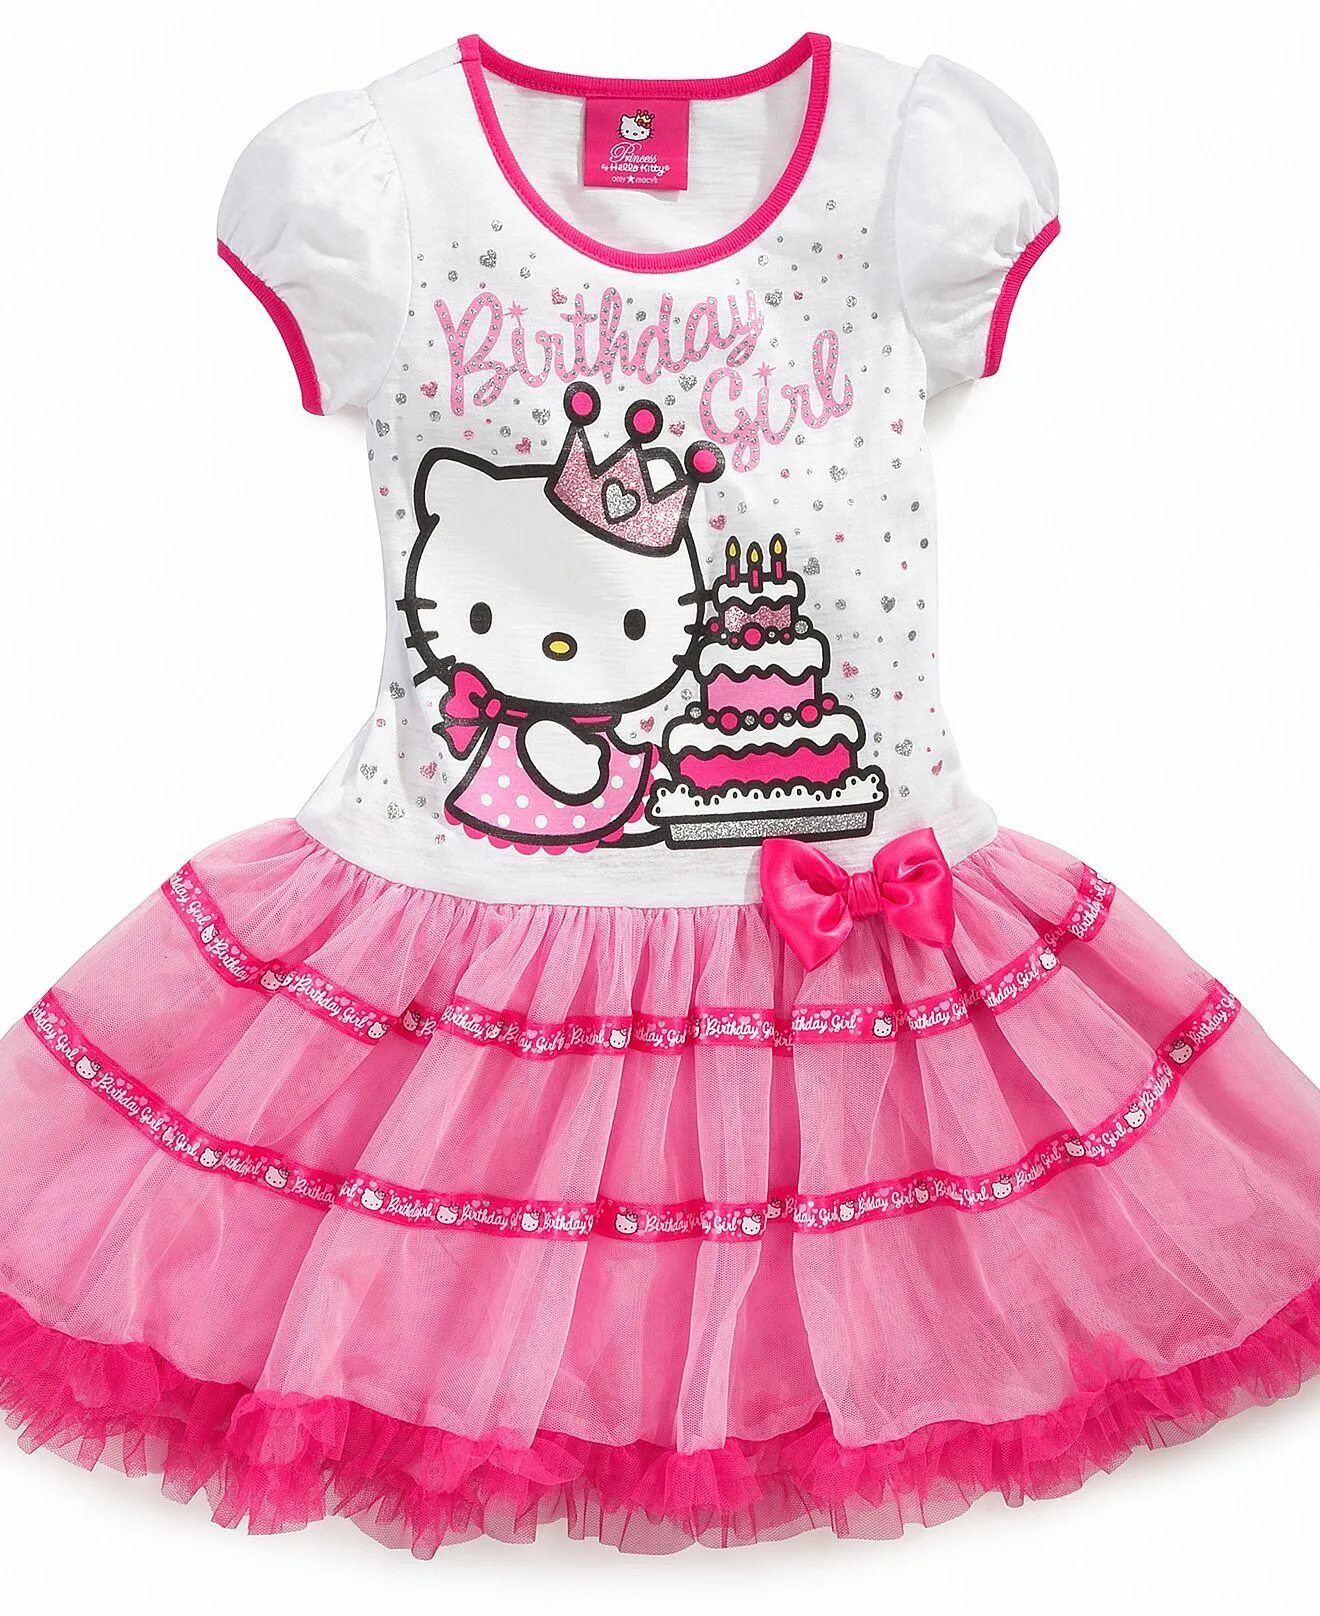 Платье Хелло Китти для девочек. Детское платье с Хеллоу Китти. Хелойкитти с одеждой. Хеллоу Китти в платье. Хэллоу одежда